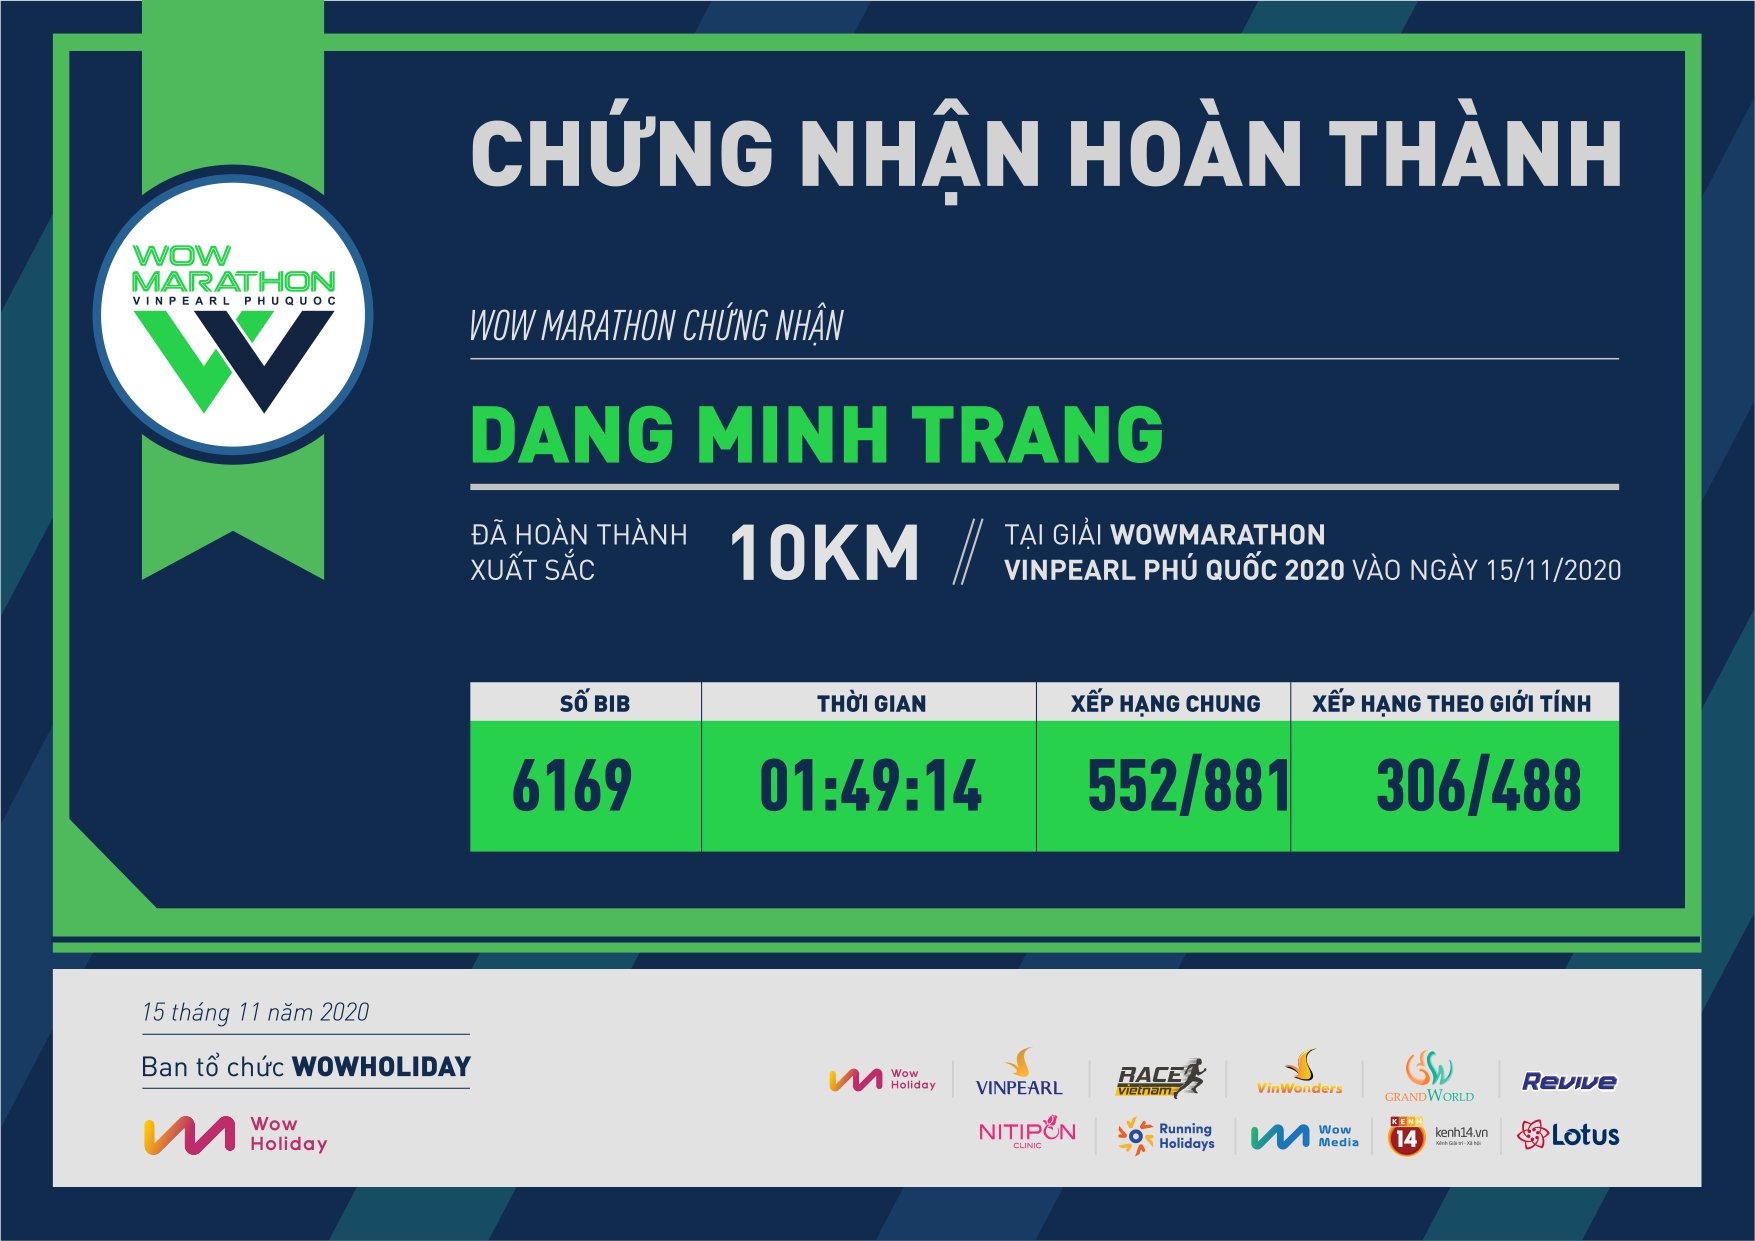 6169 - Dang Minh Trang